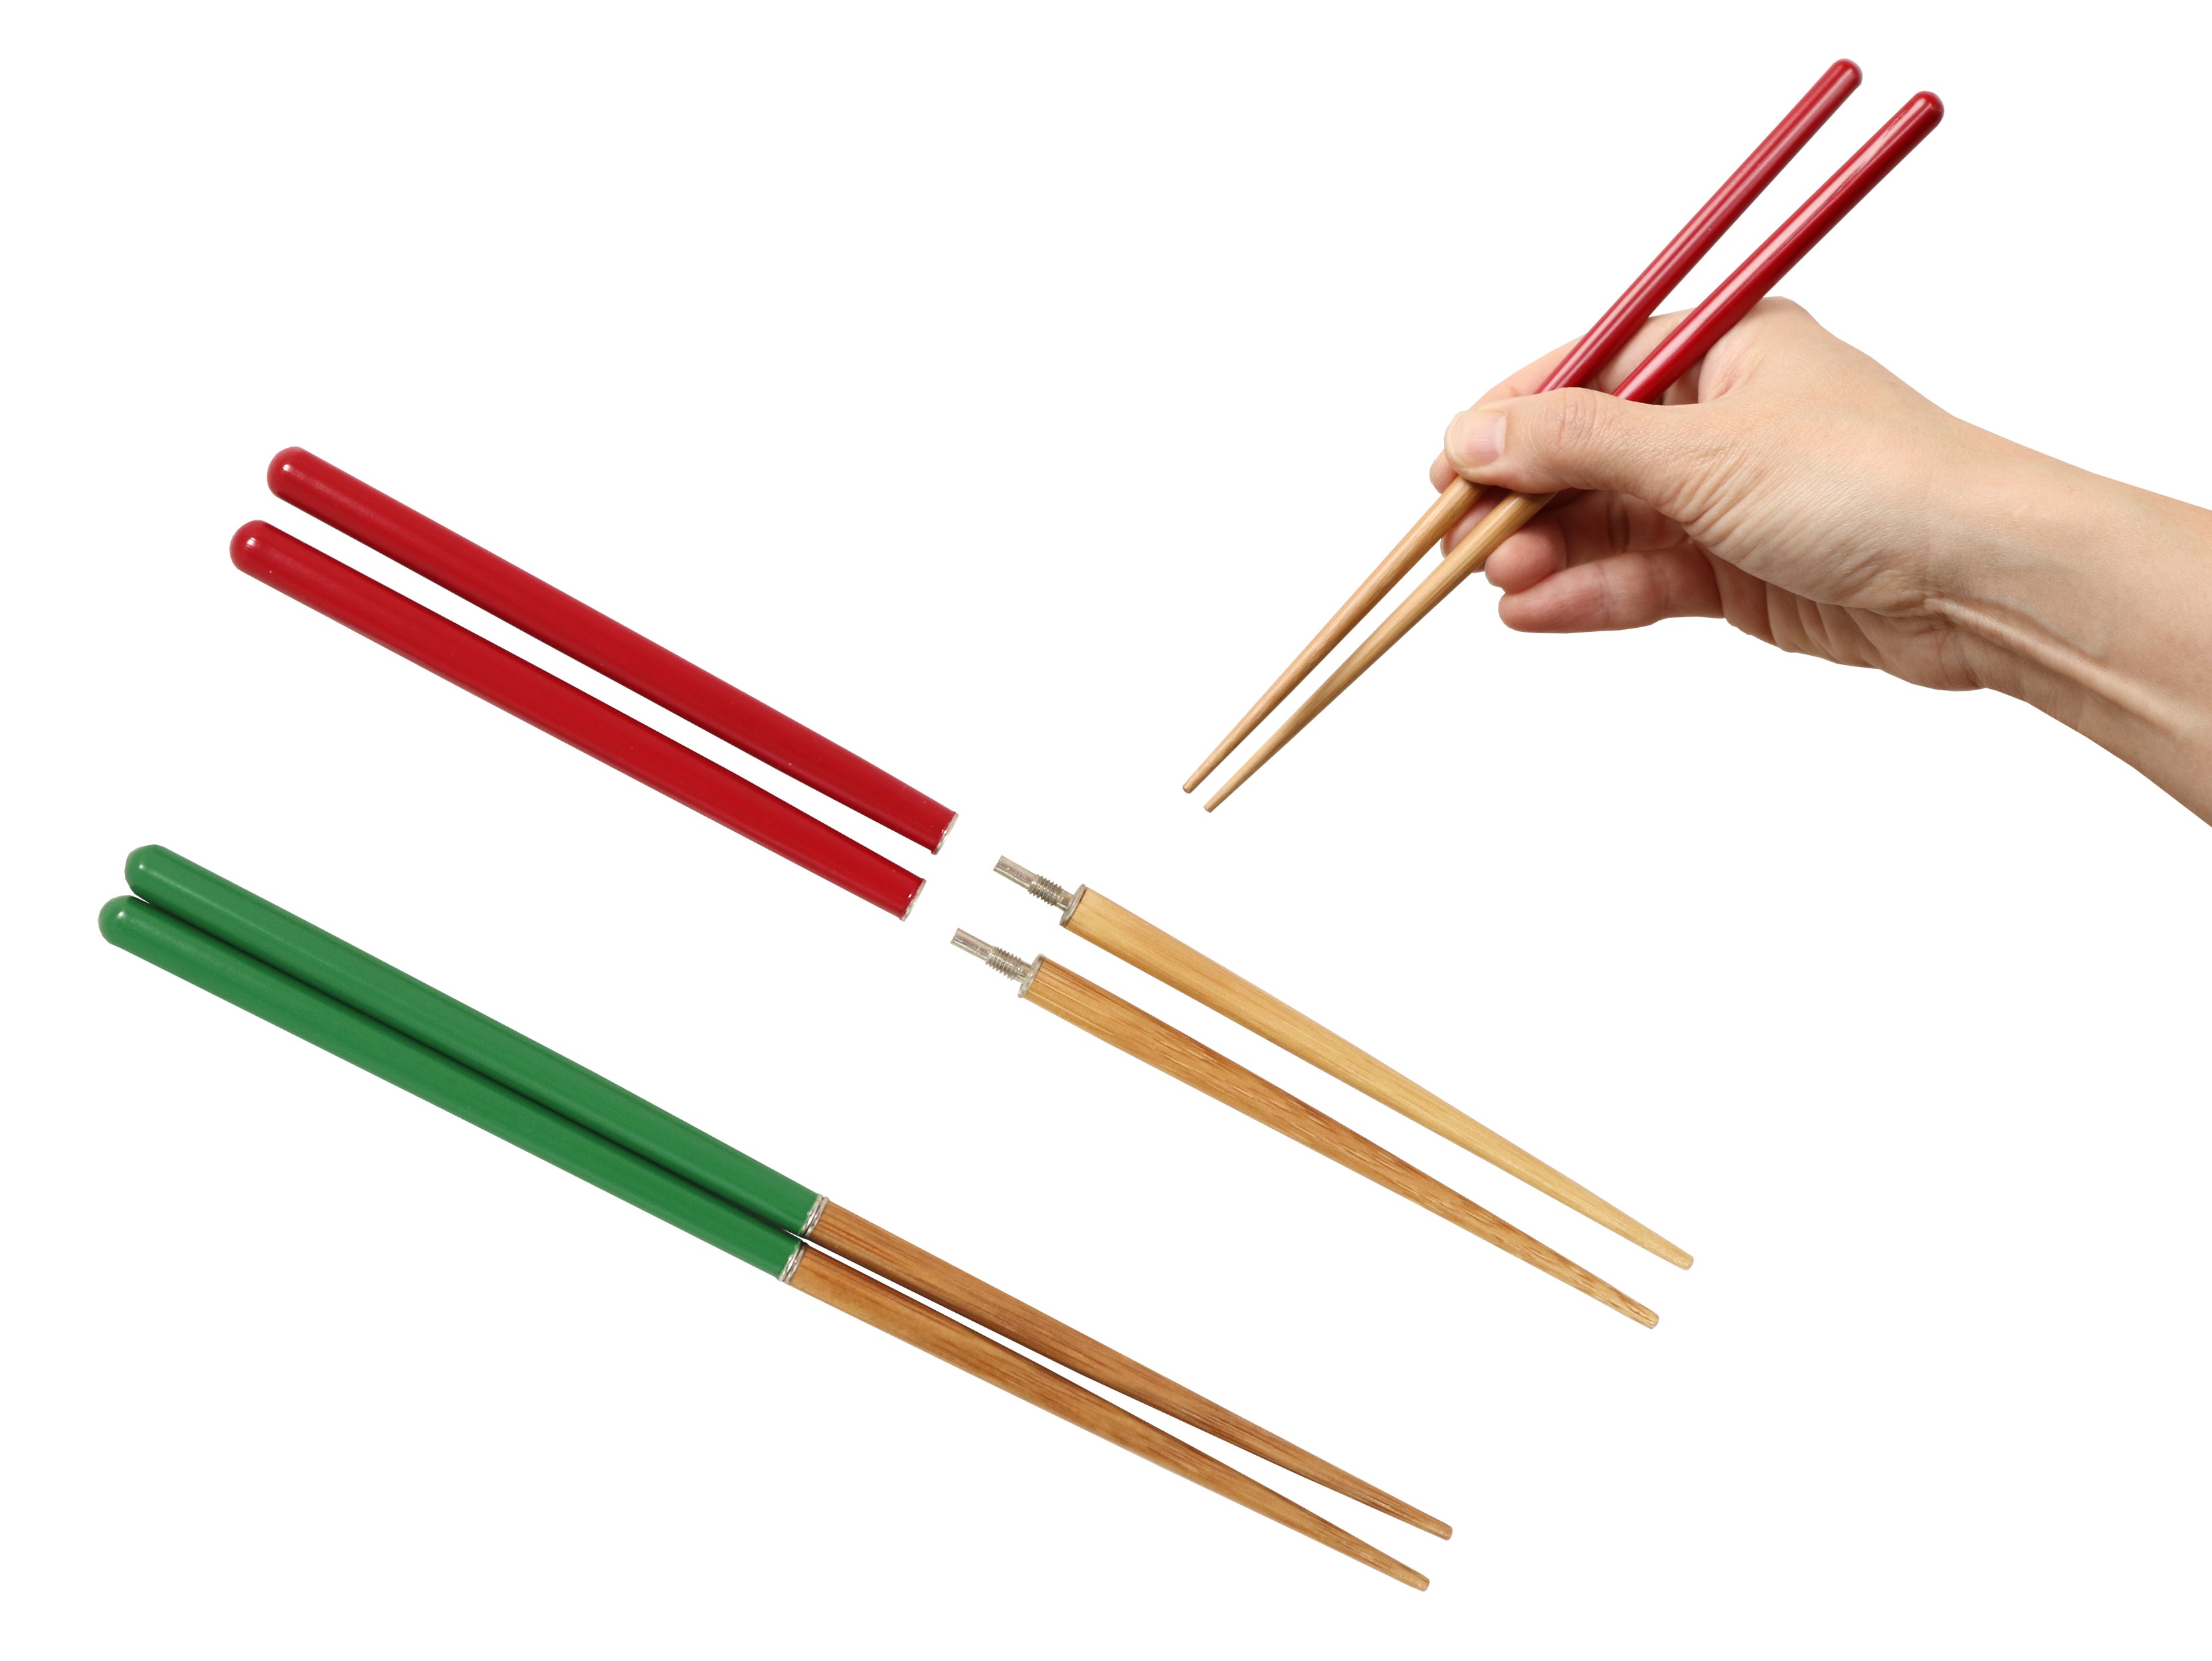 Folding Chopsticks Camping - Travel Supplies - Folding Wooden Chopsticks,  Portable Outdoor Supplies, Reusable Travel Chopsticks, Foldable Chopsticks